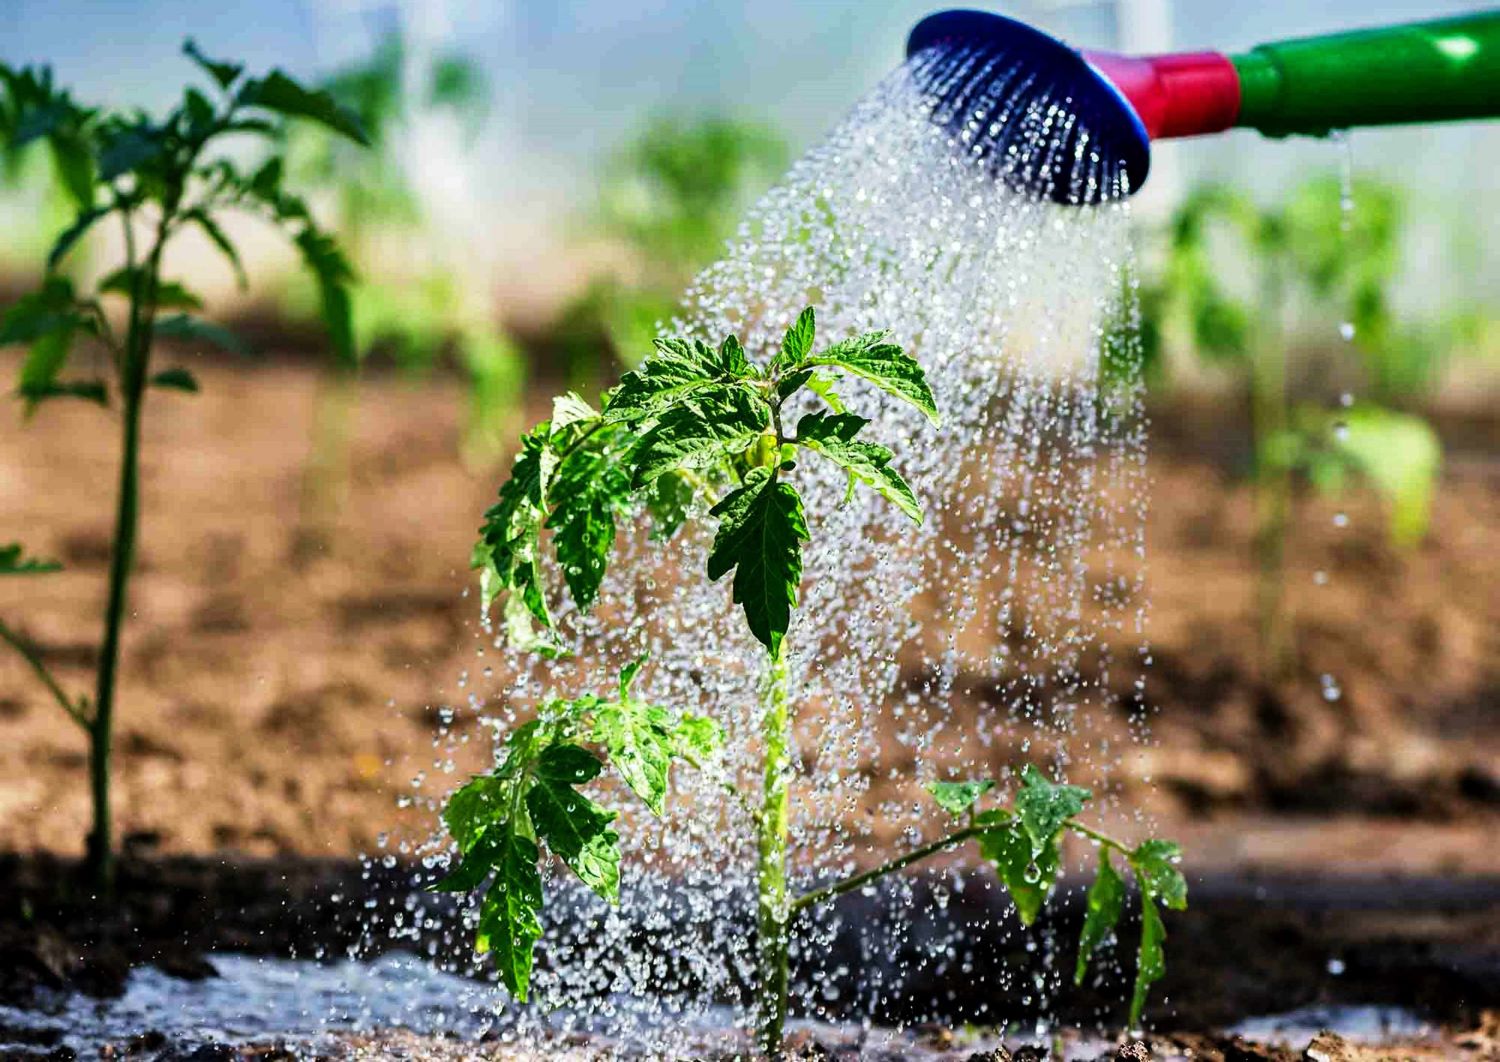 Безопасна ли вода для полива растений, которая стекает с рубероида или ондулина?